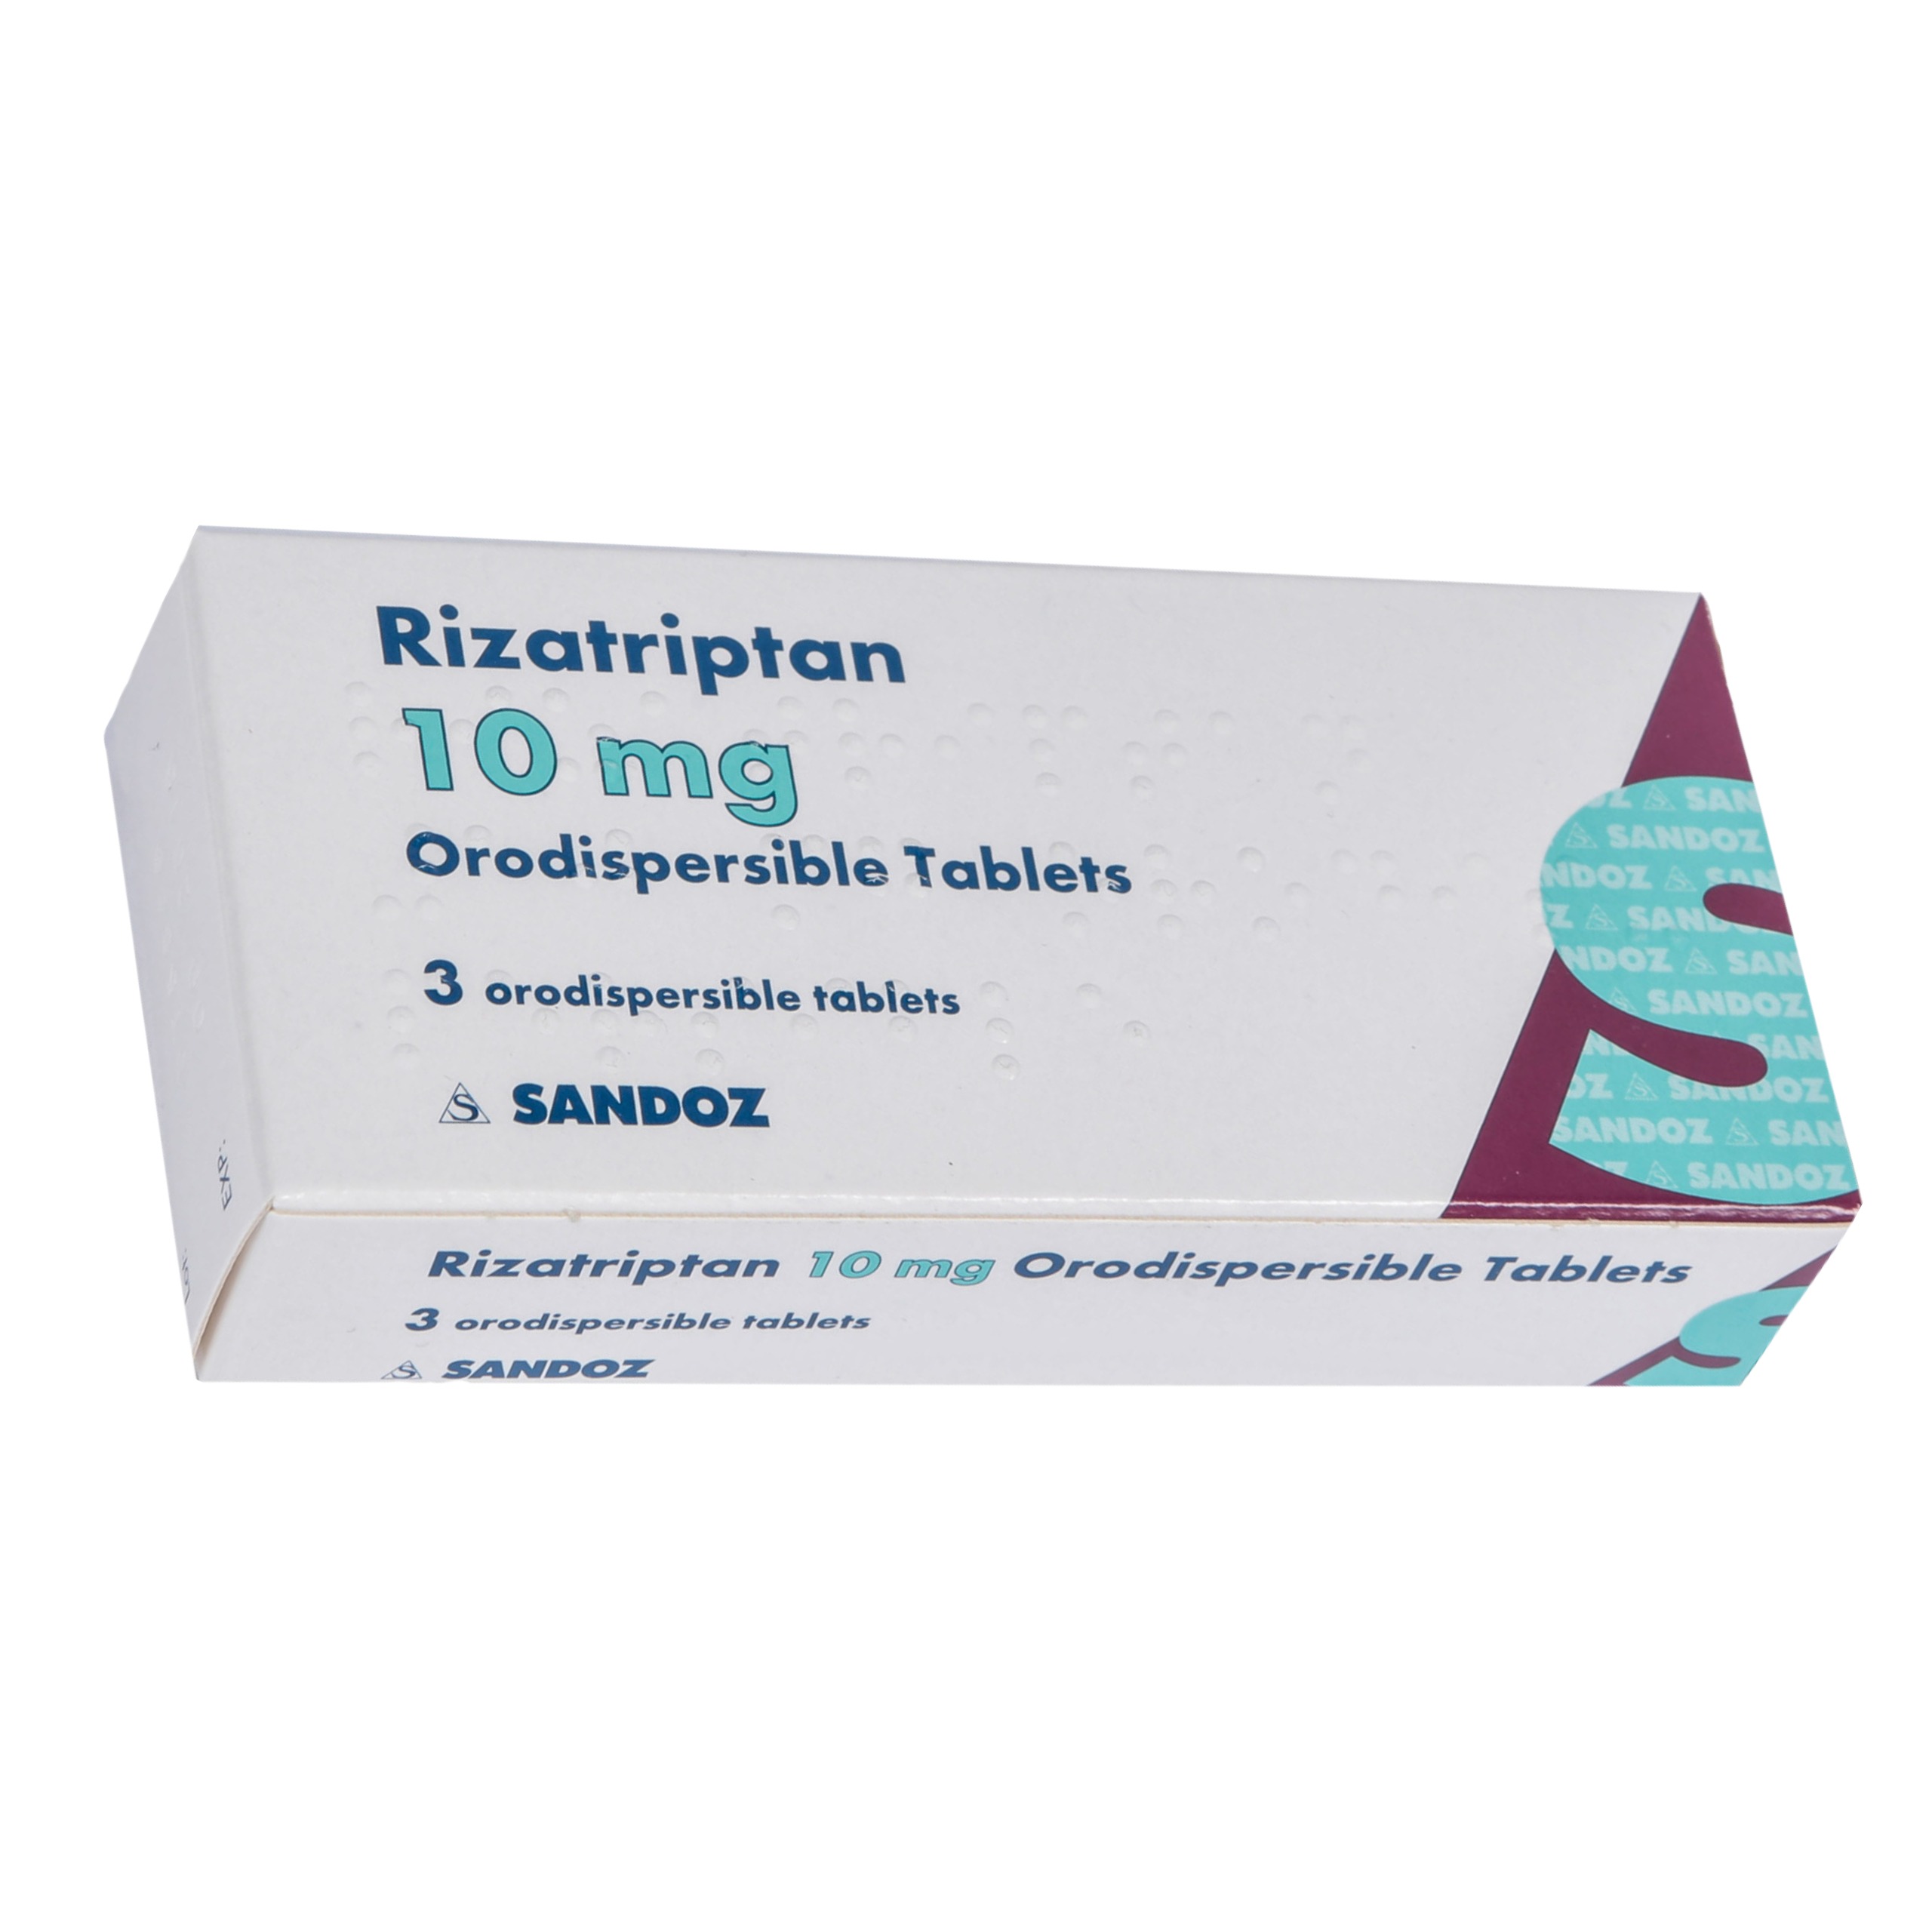 Rizatriptan 10mg Orodispersible Tablets